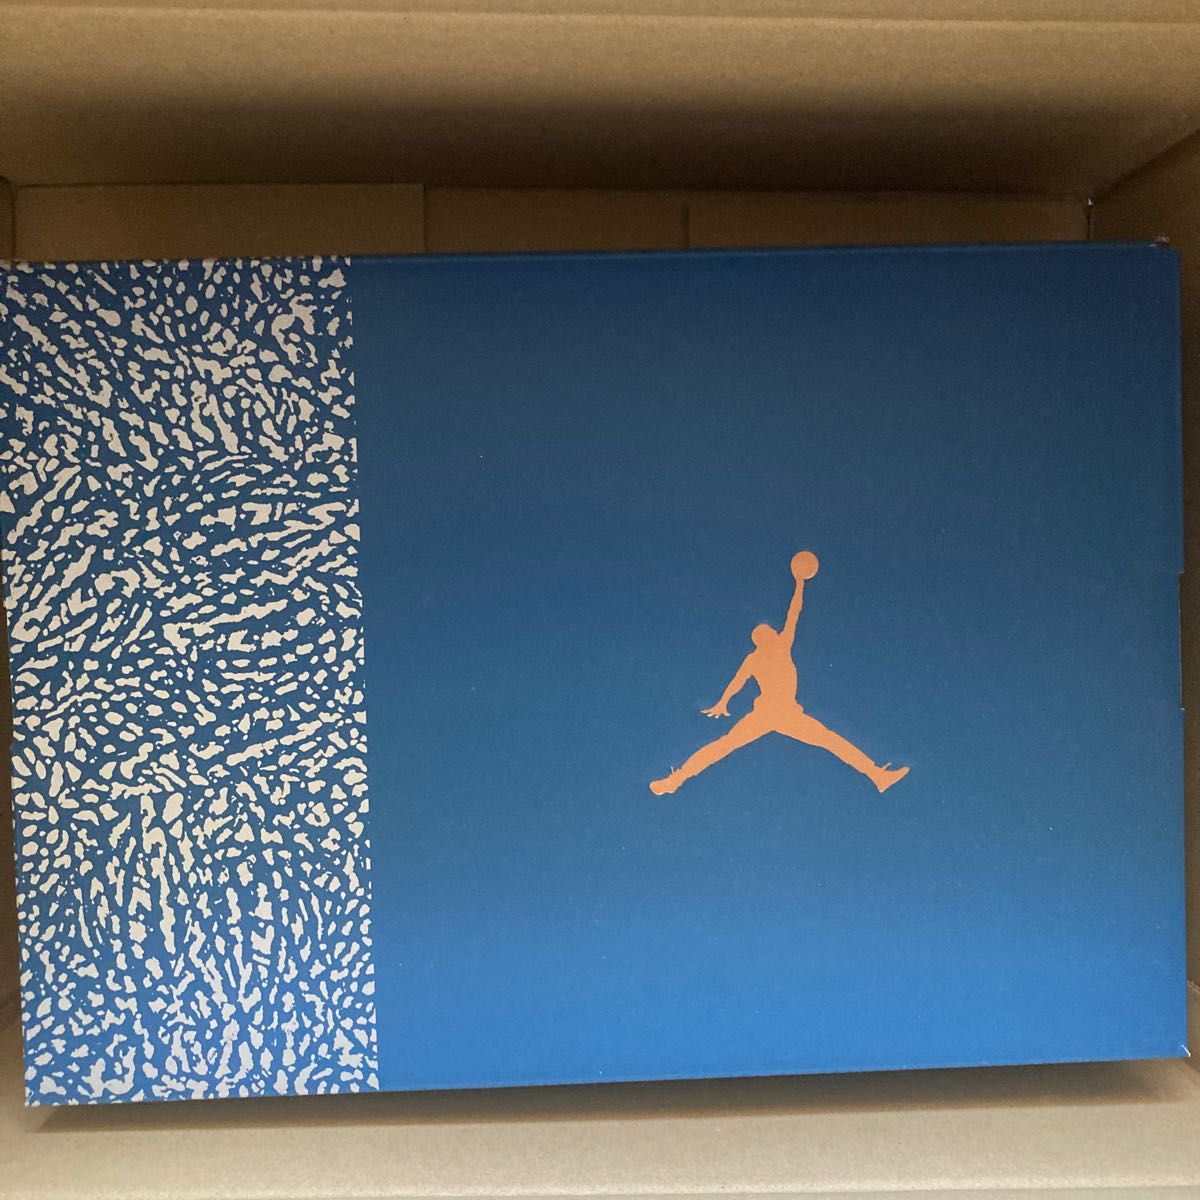 Nike Air Jordan 3 Retro "True Blue and Copper"ナイキ エアジョーダン3 レトロ "ト